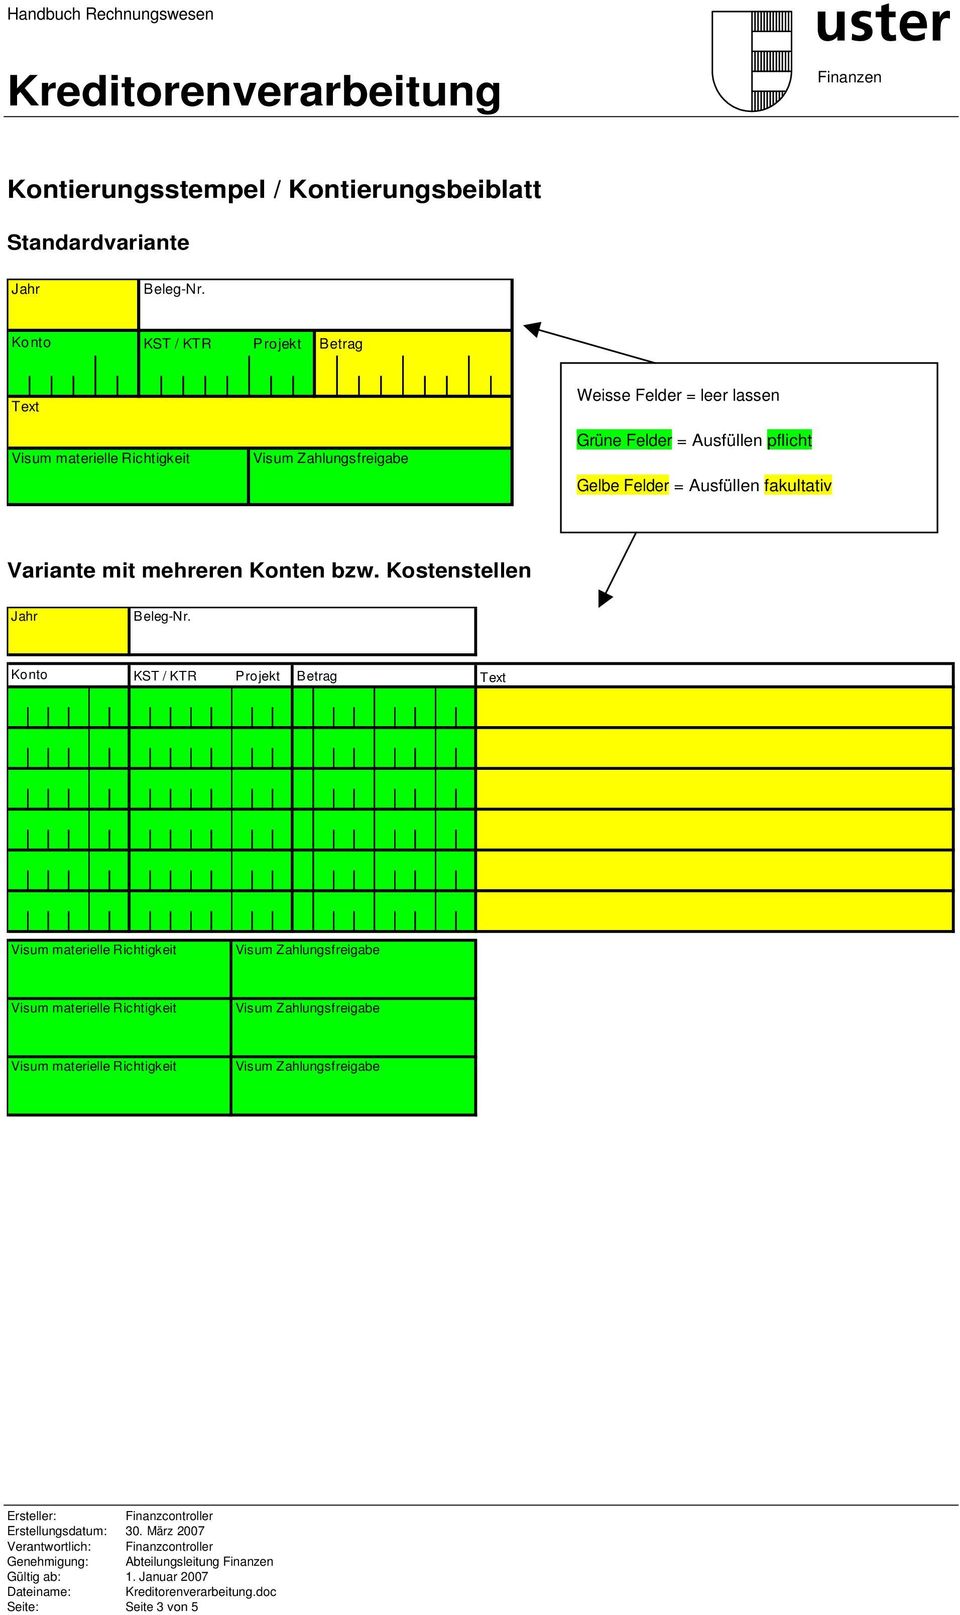 Ausfüllen pflicht Gelbe Felder = Ausfüllen fakultativ Variante mit